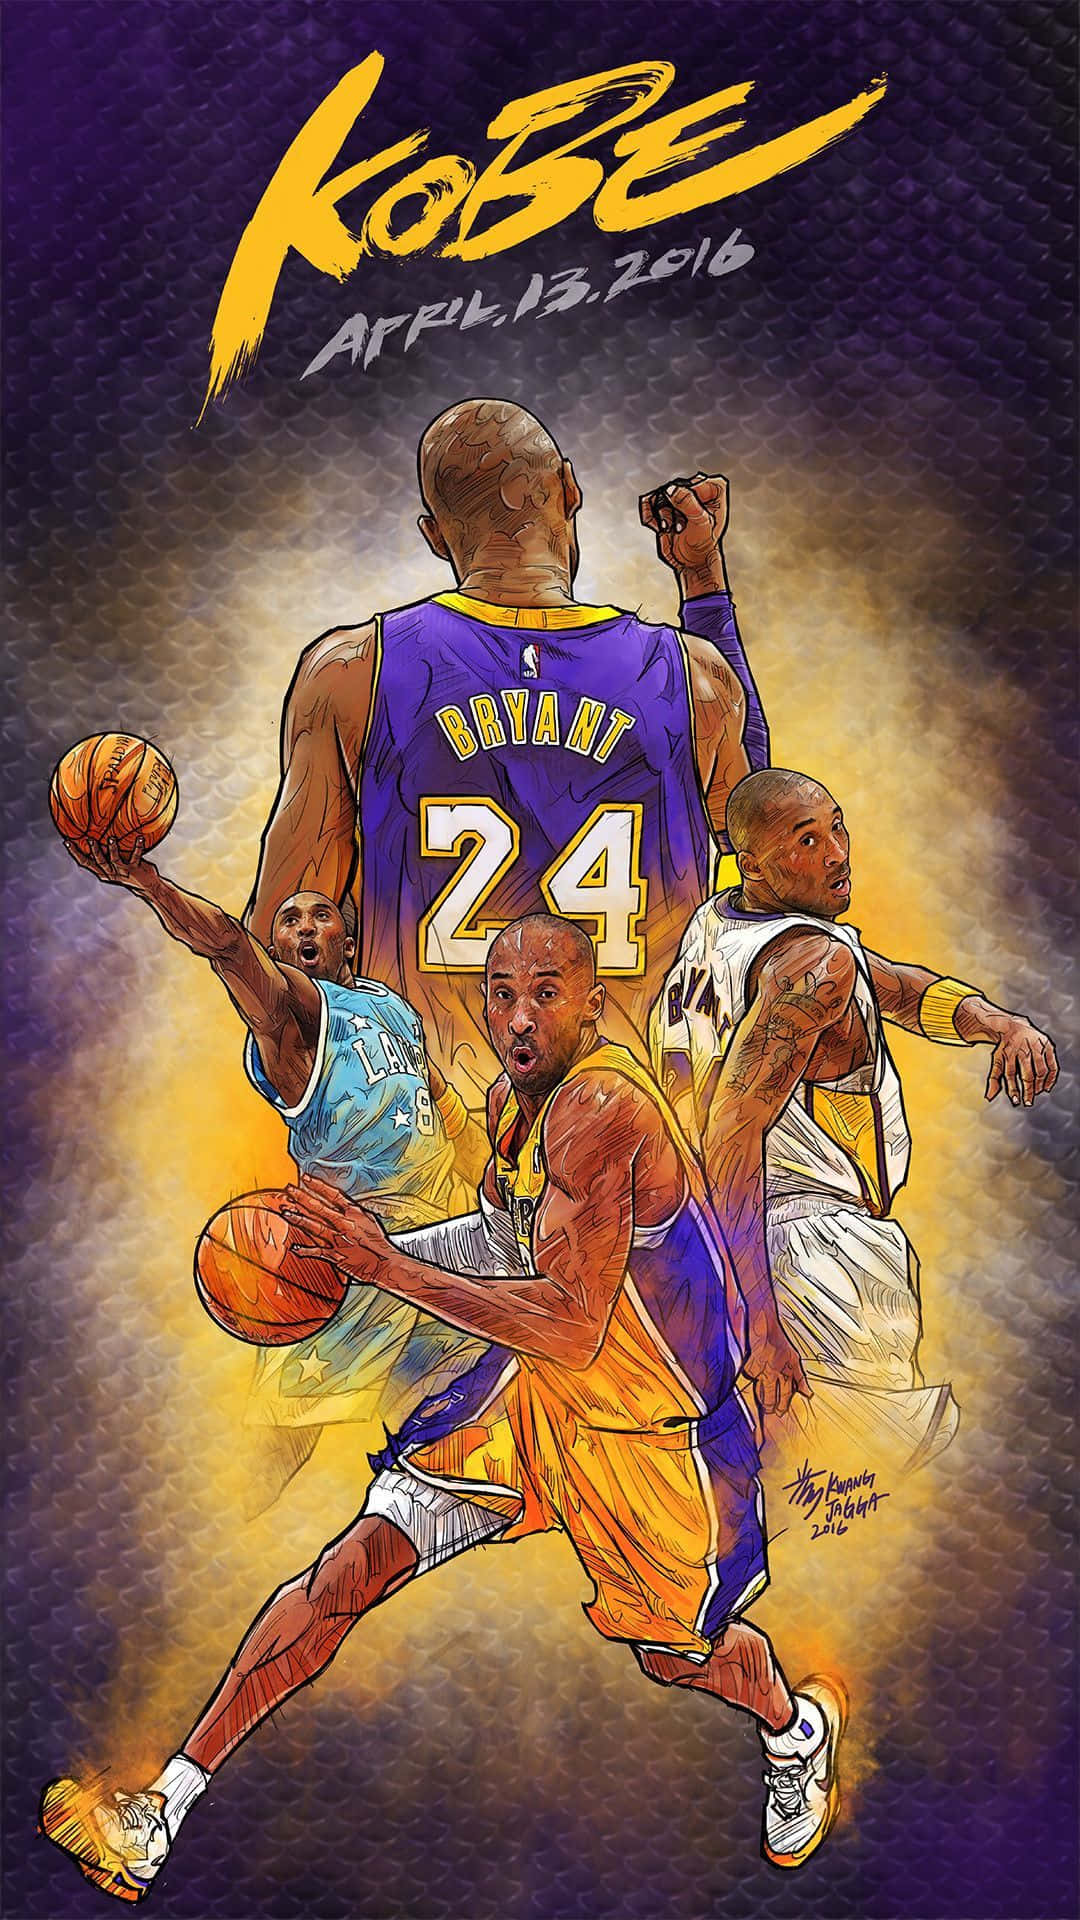 Legendary NBA Star, Kobe Bryant